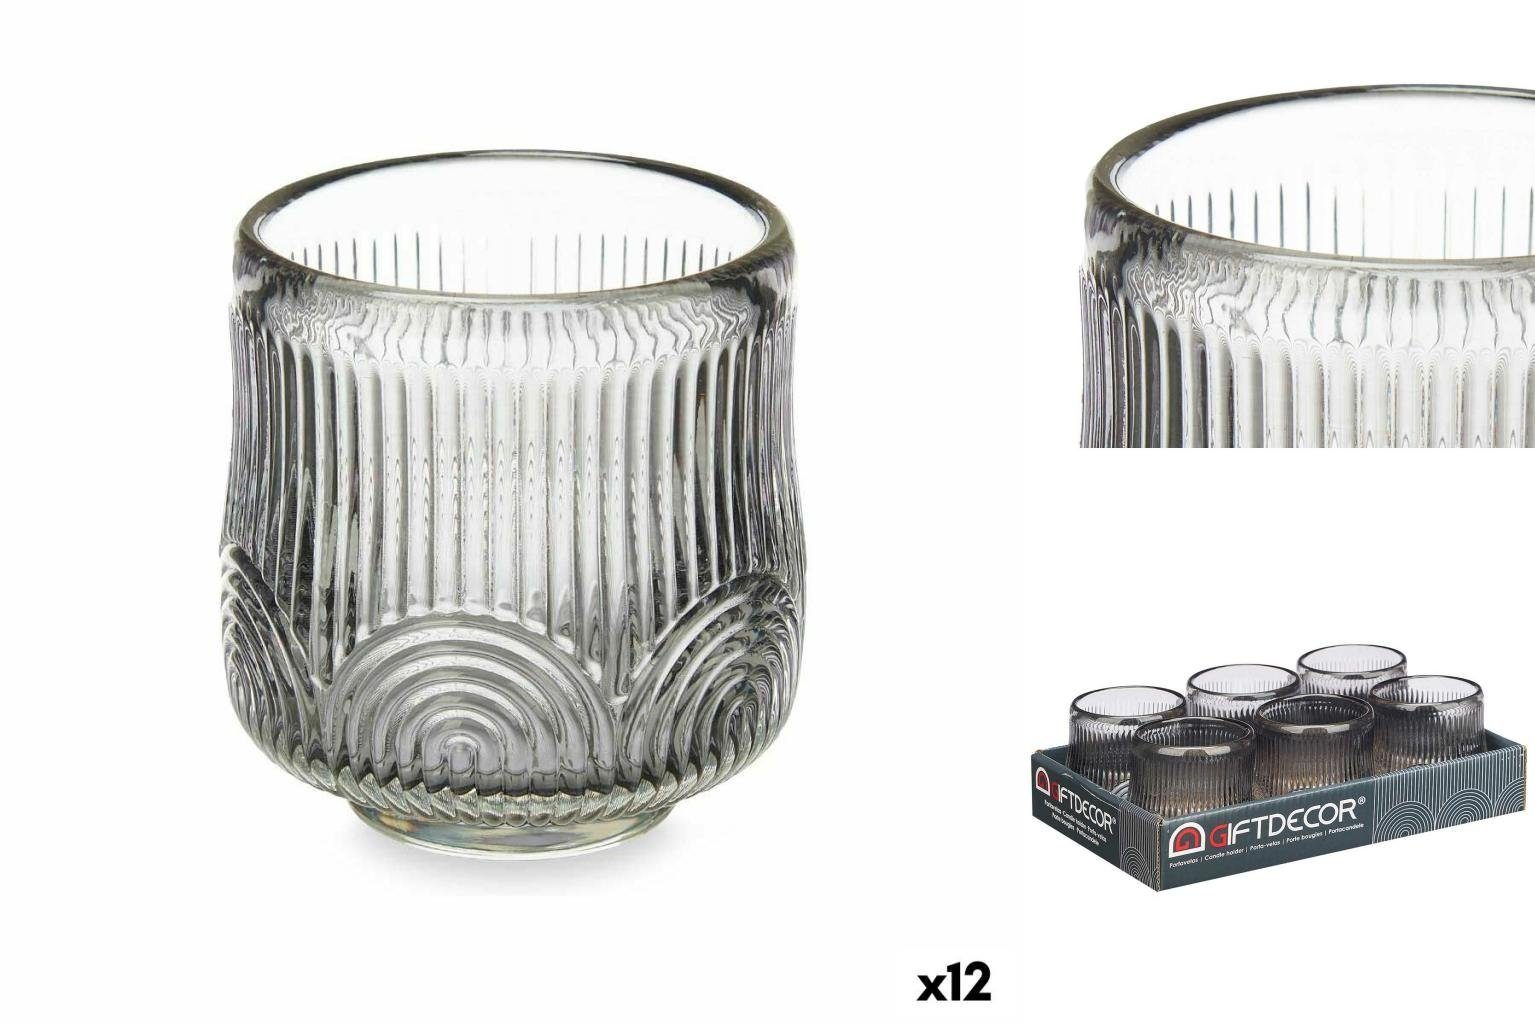 x Windlicht Stück Decor cm 12 7,8 7,5 Kerzenschale 7,5 x Streifen Gift Grau Glas